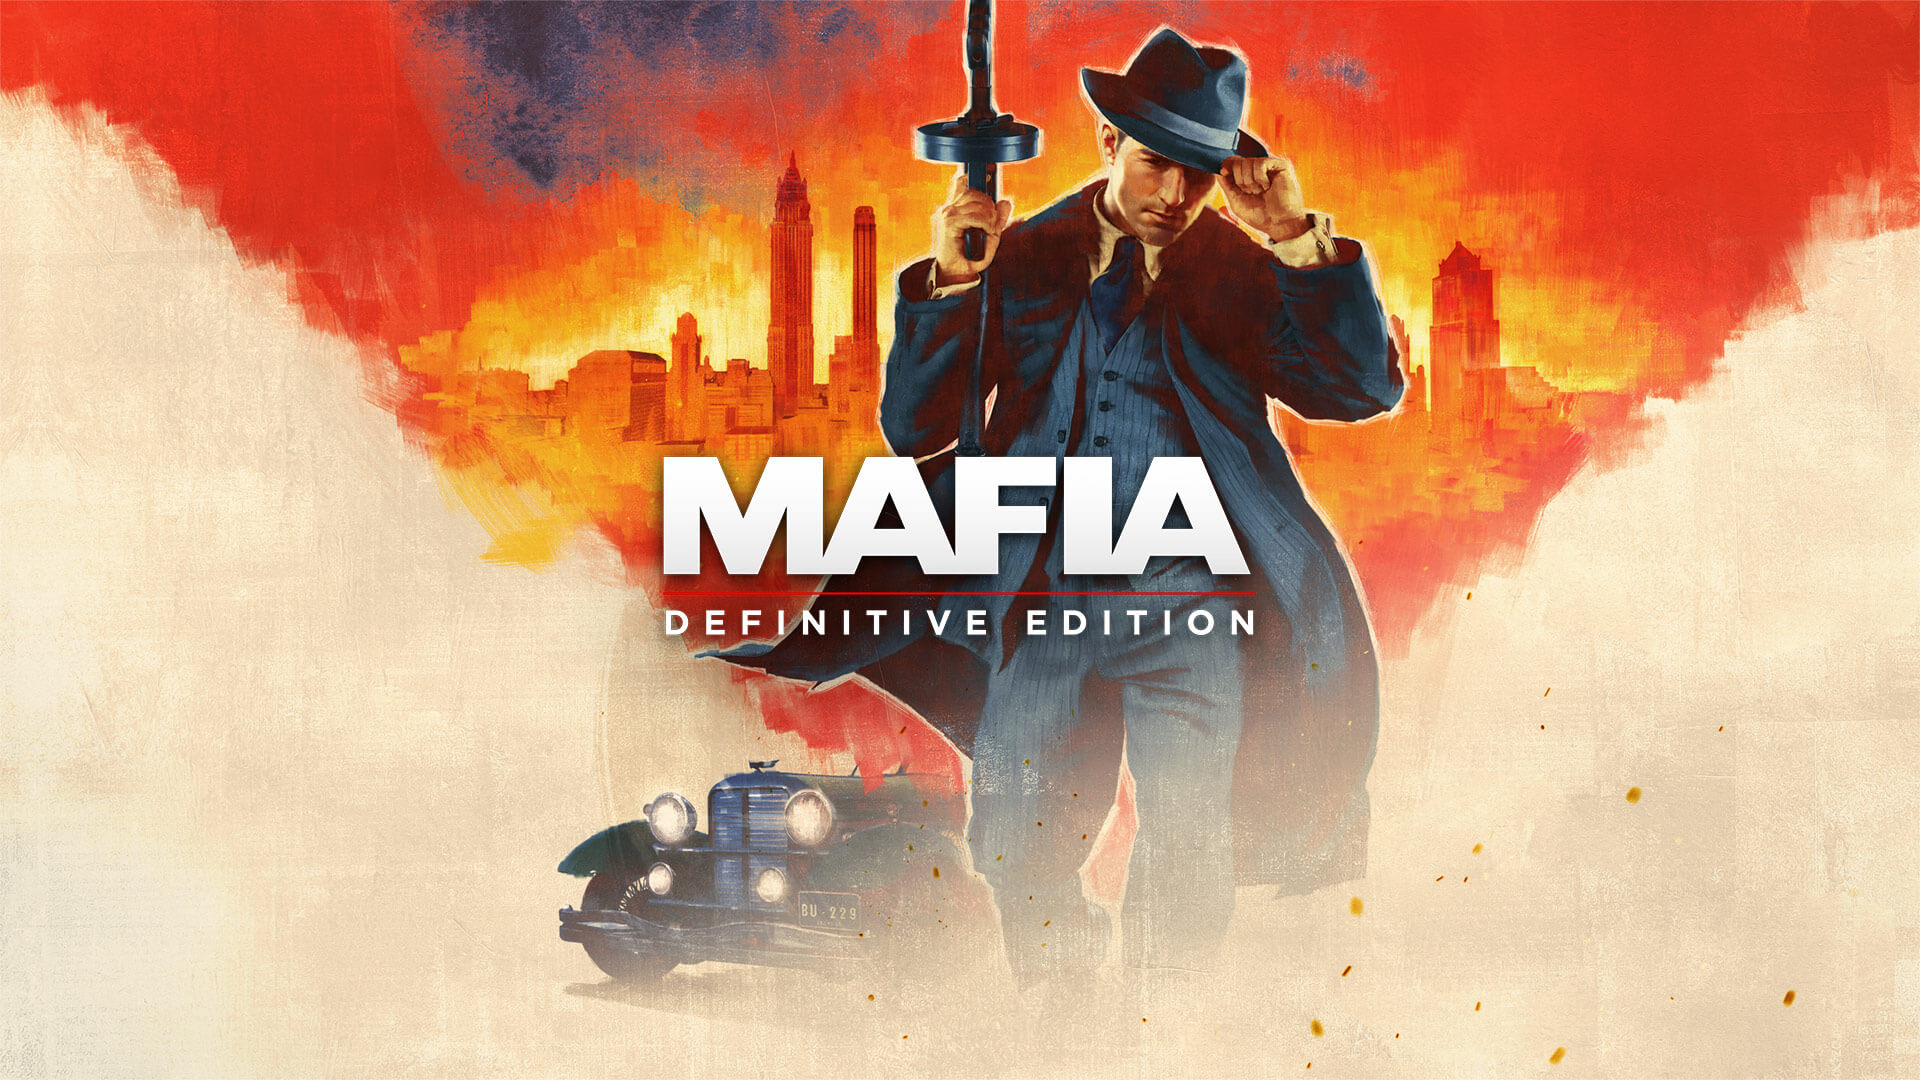 Mafia Definitive Edition 1 oyununu bitirdim ve düşündüklerimi sizlere anlatım.